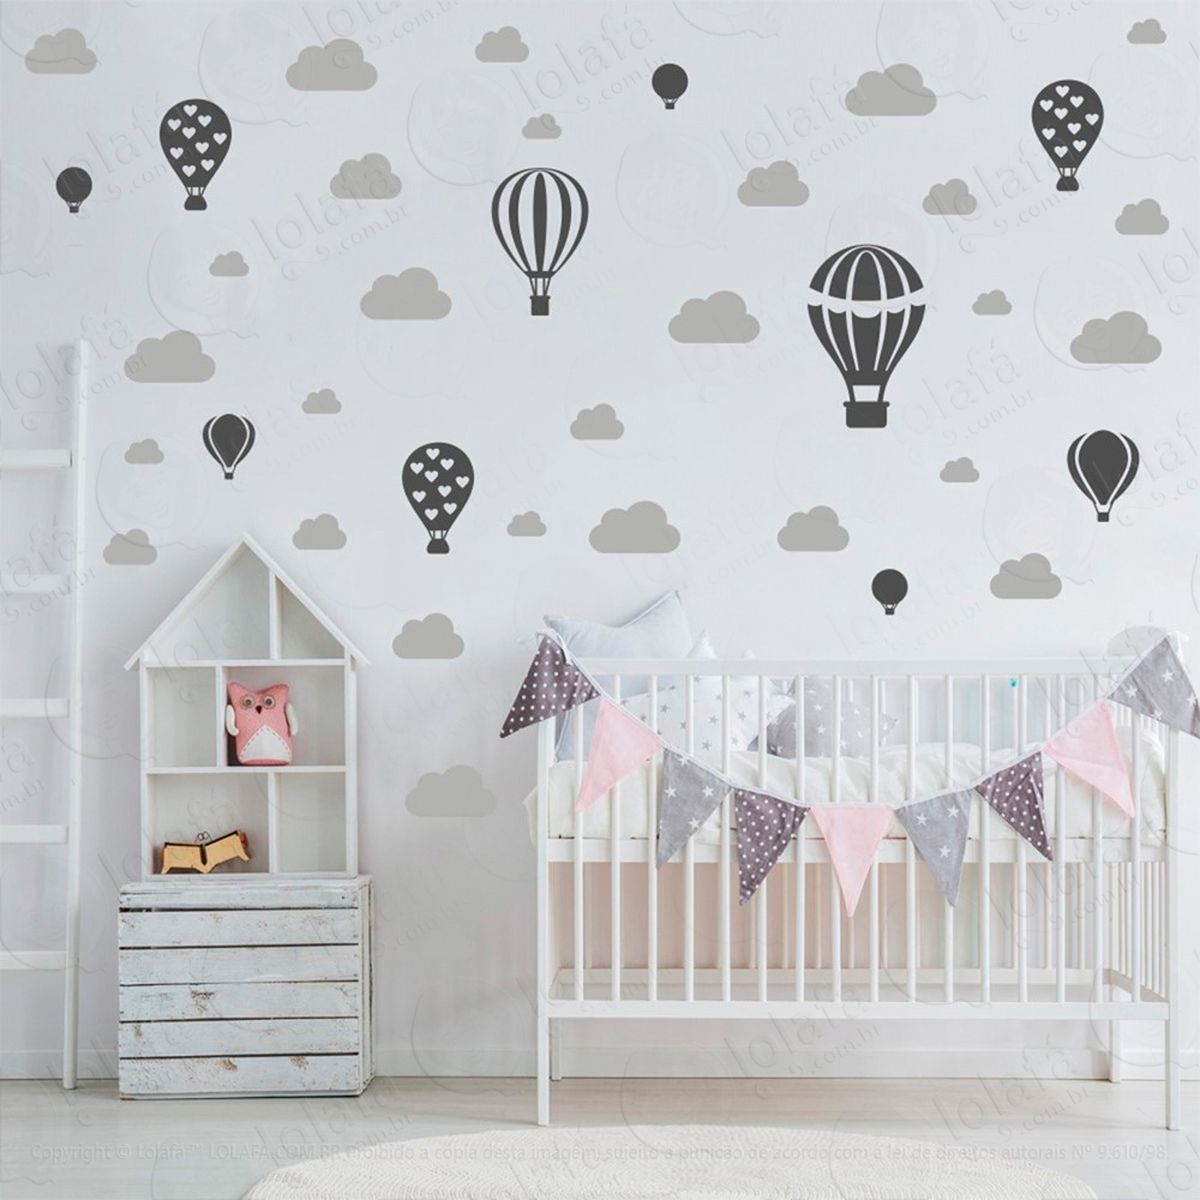 adesivos balões e nuvens 42 peças adesivos para quarto de bebê infantil - mod:799